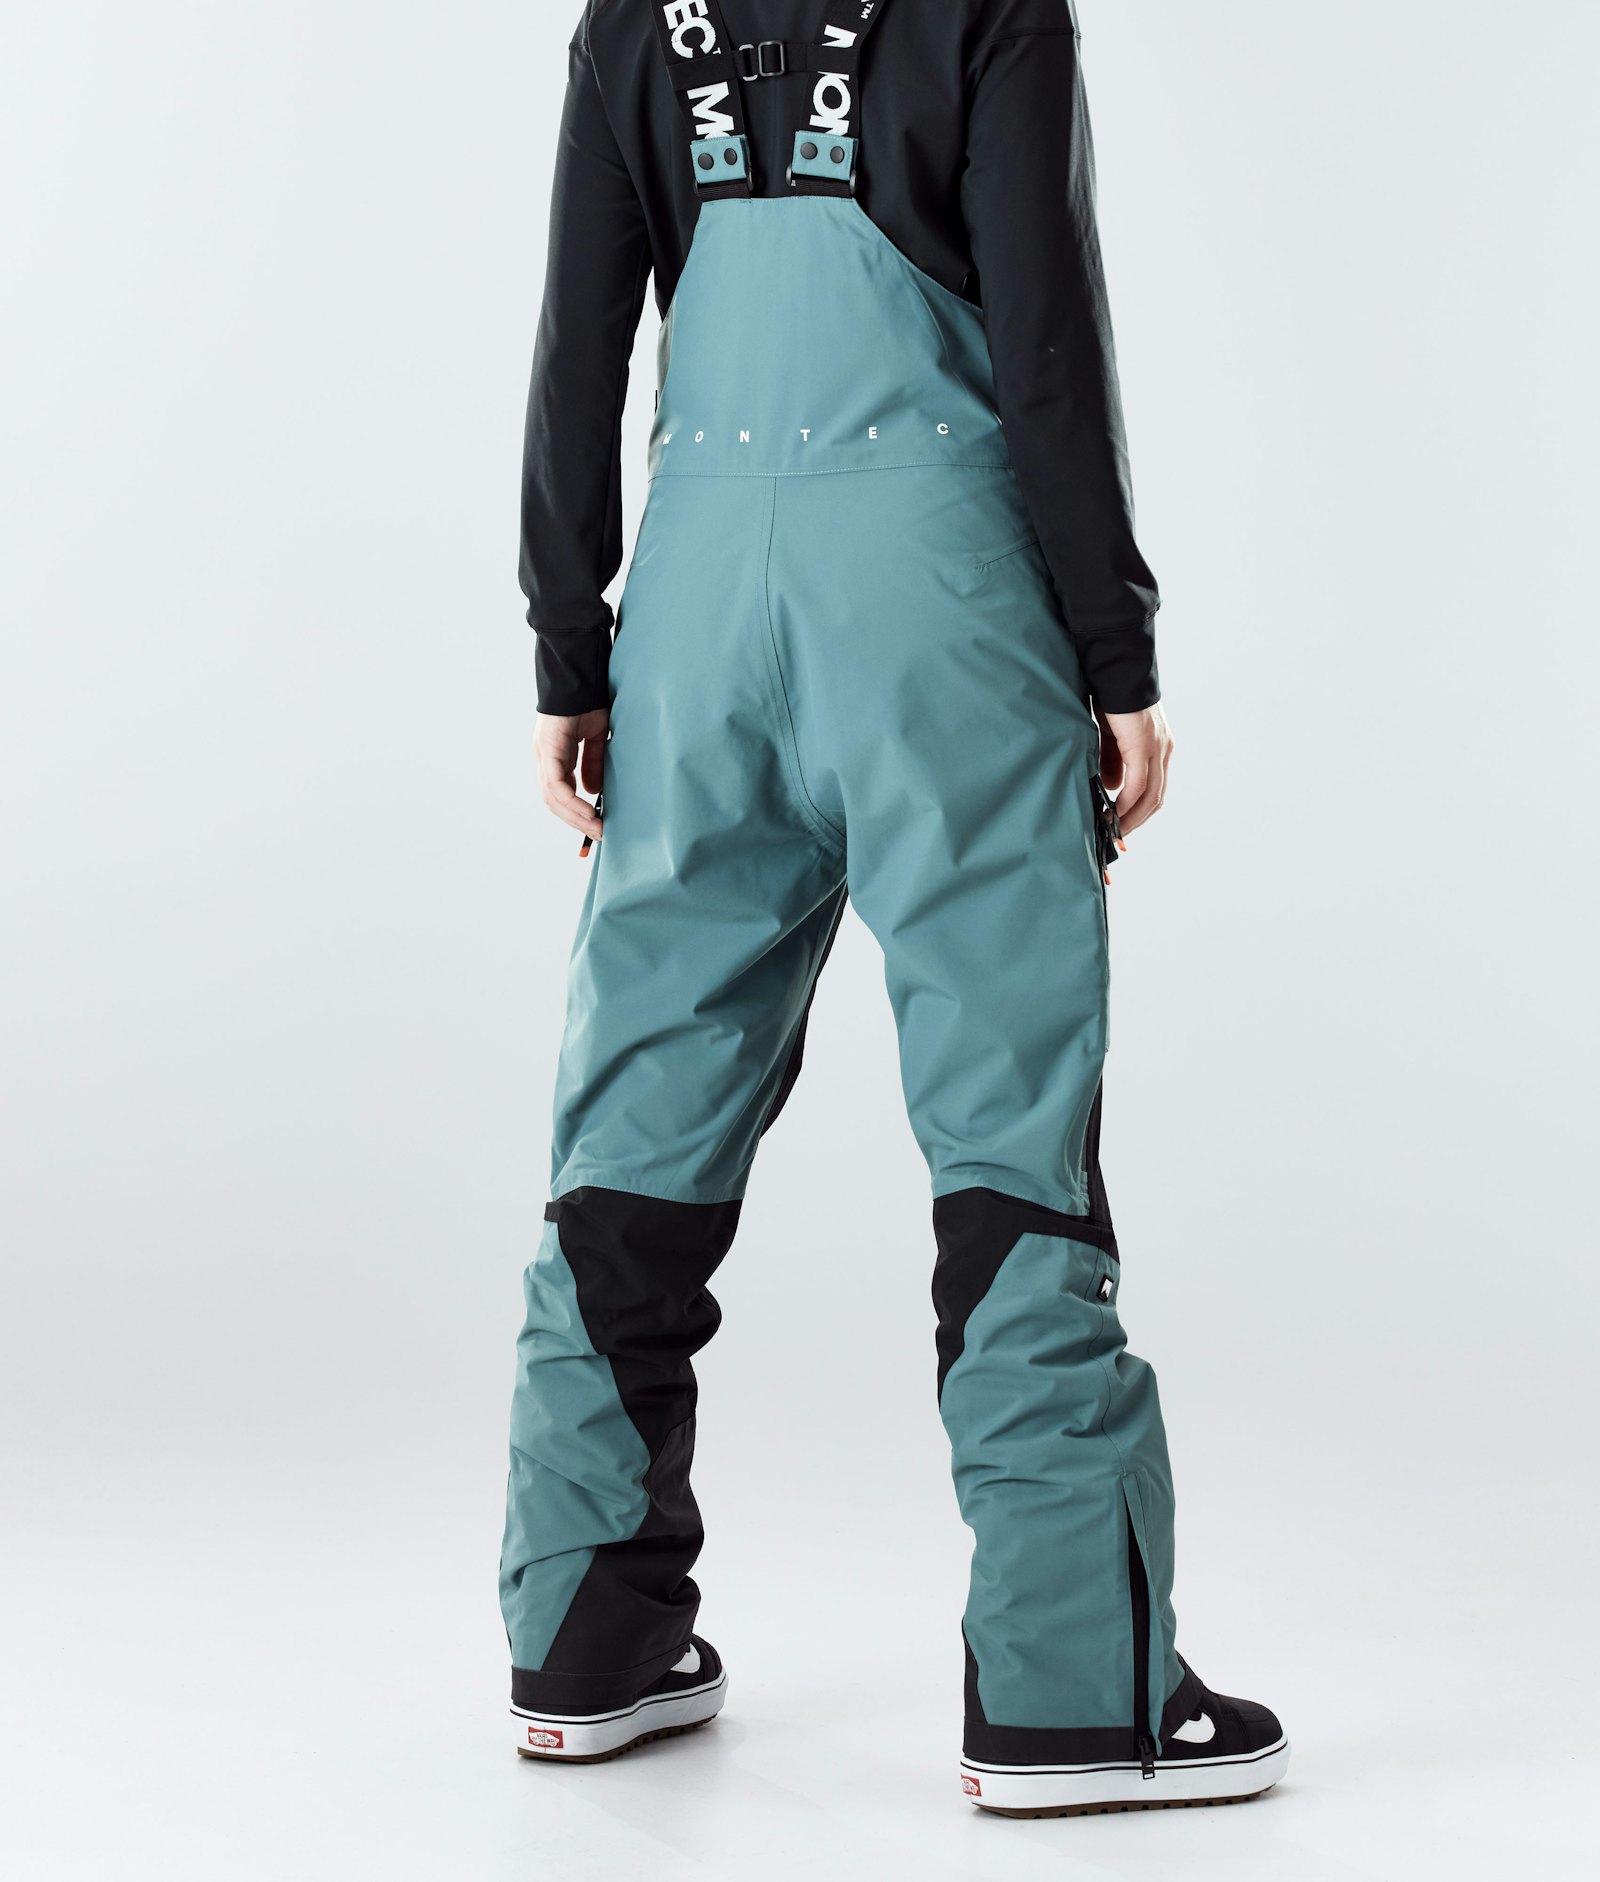 Fawk W 2020 Snowboard Pants Women Atlantic/Black